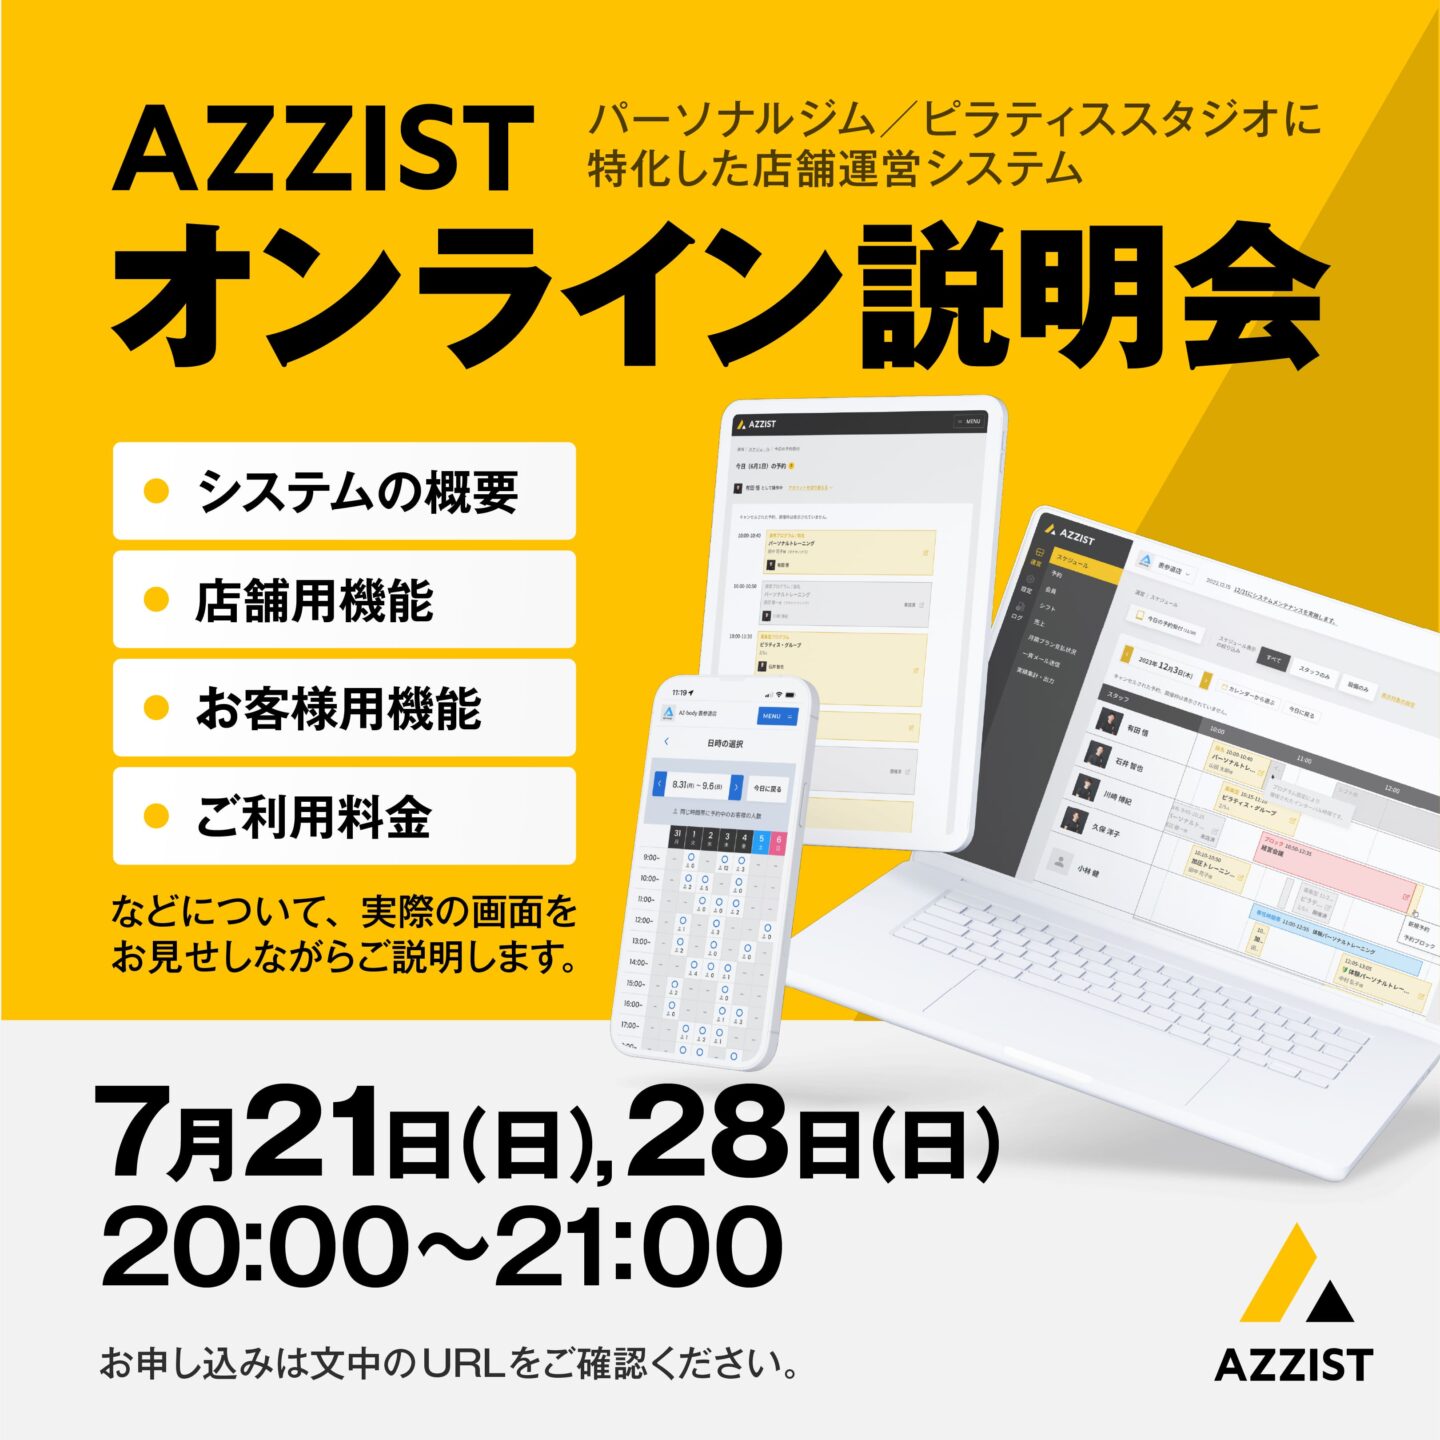 告知画像：「7月 AZZIST（アシスト）オンライン説明会」開催のお知らせ